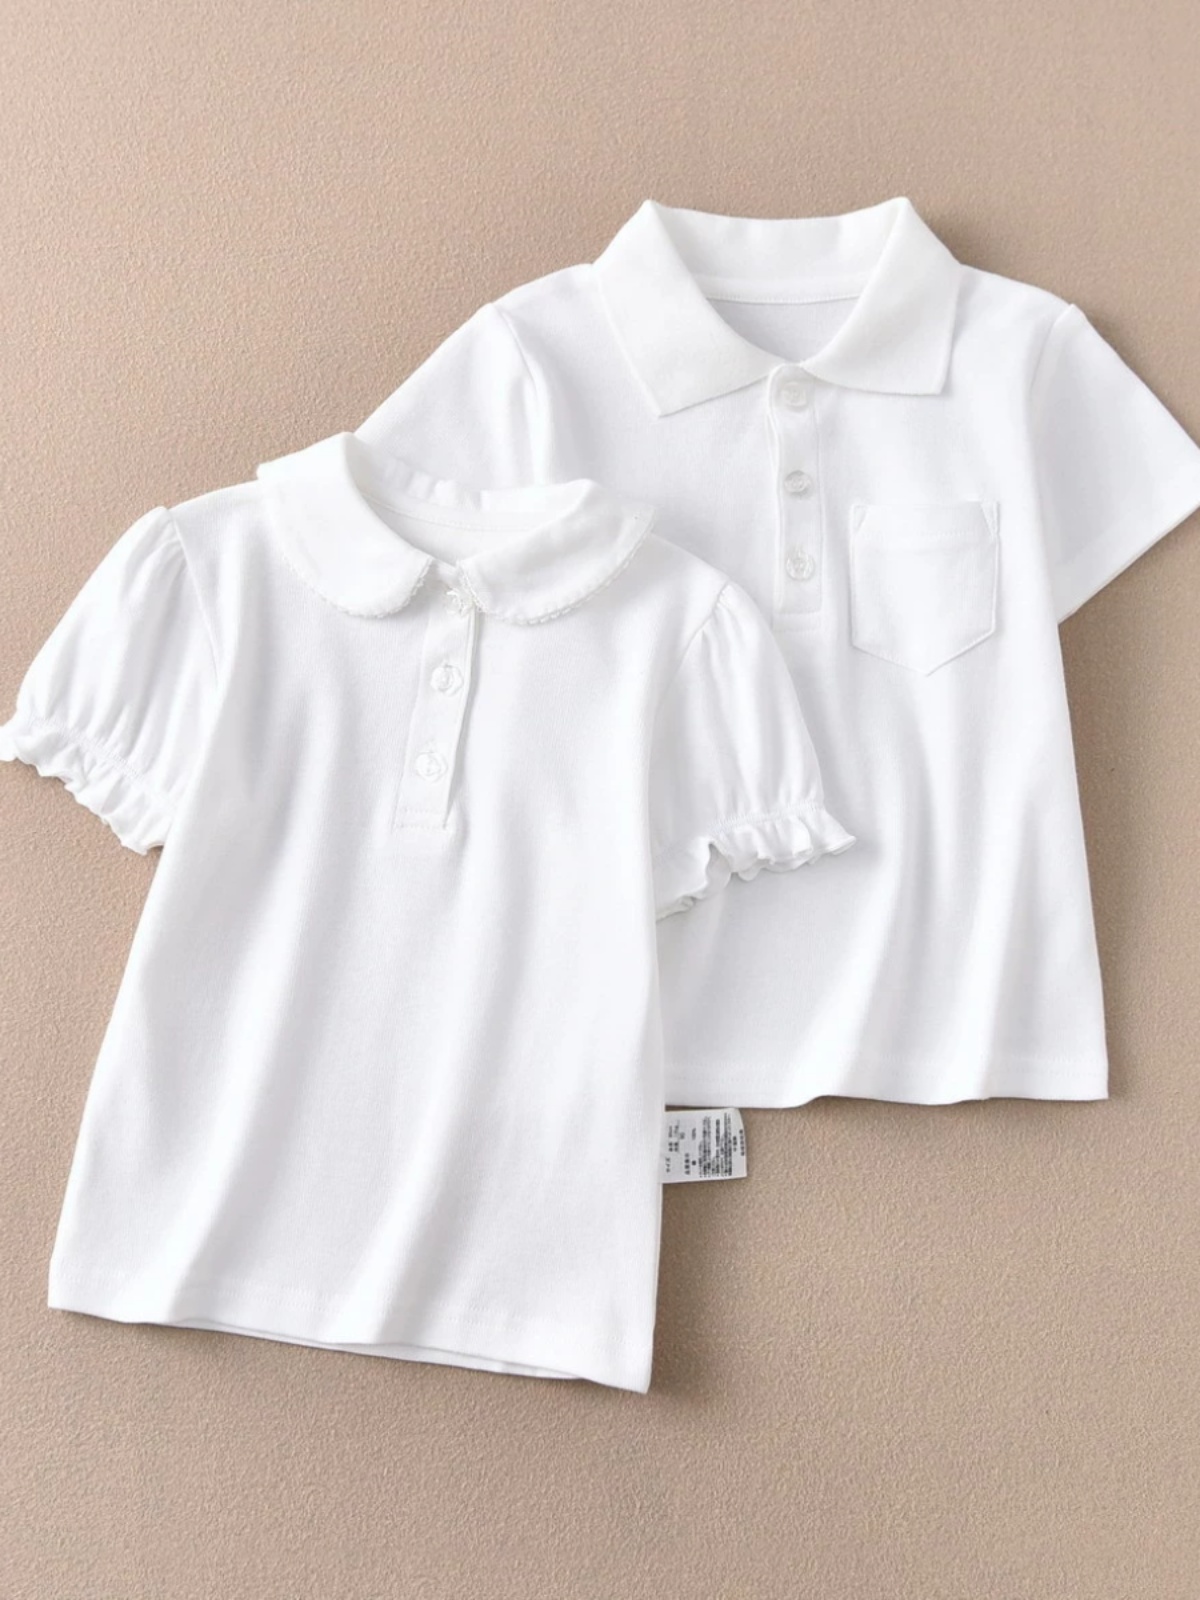 巴拉出口日本白色学生打底衫男女孩儿童白色短袖T恤校服幼儿园演